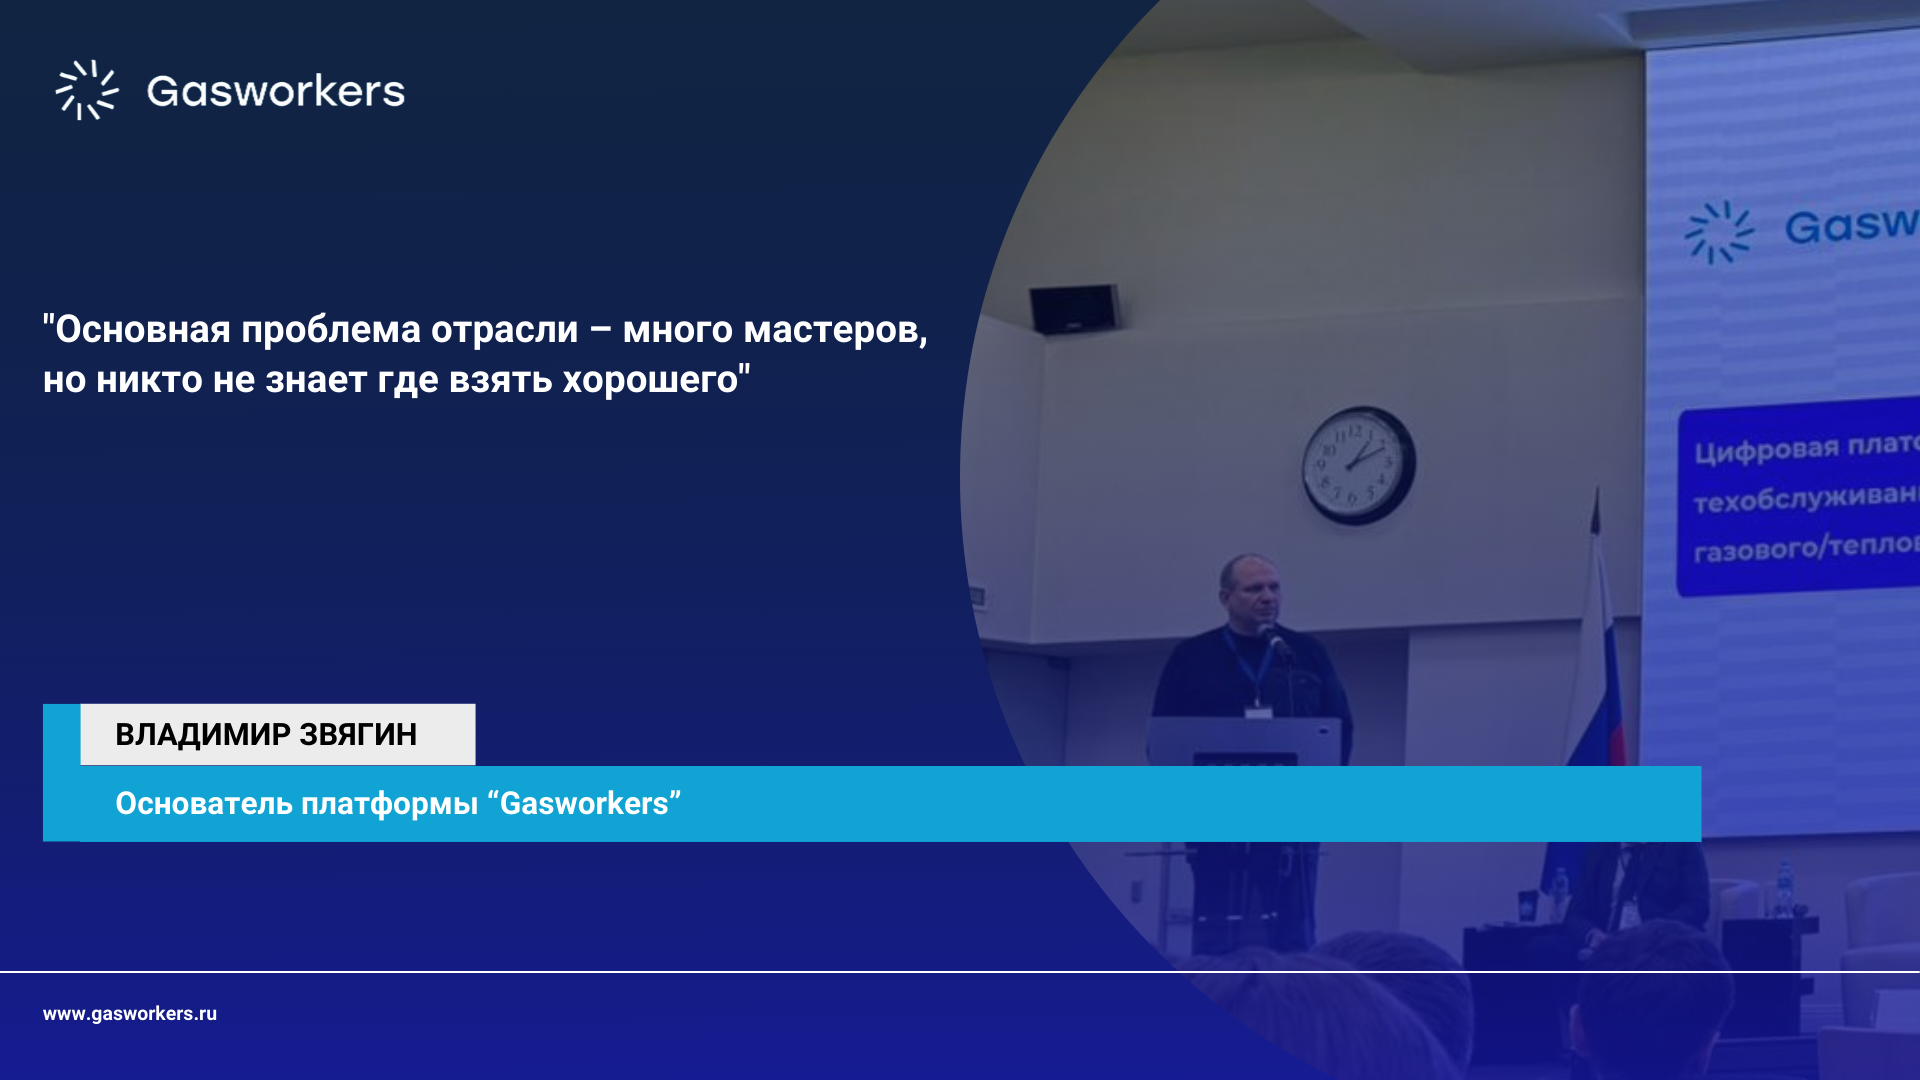 Основатель Платформы Gasworkers Владимир Звягин выступил в качестве спикера на семинаре Ростехнадзора «Цифровые платформы и сервисы в области промышленной безопасности и использования атомной энергии на основе данных и ИИ»